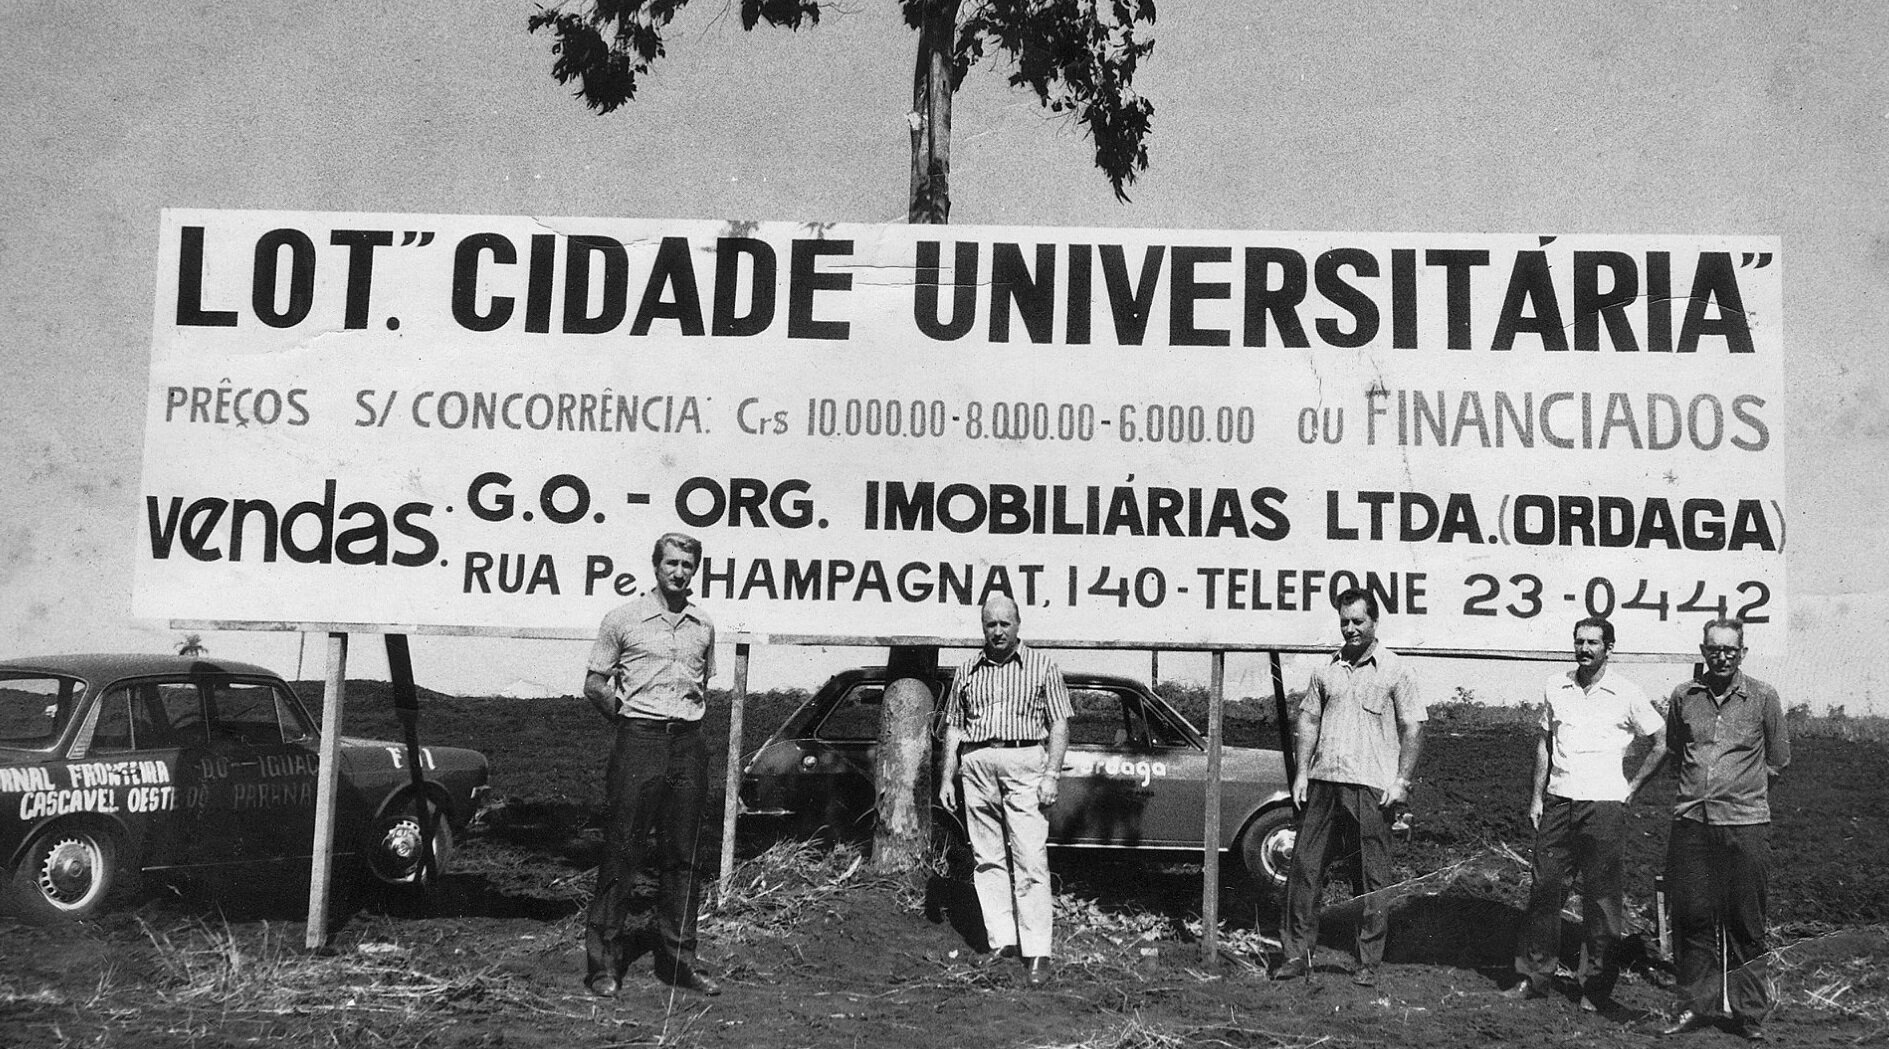 Loteamento da Cidade Universitária - Década de 1970